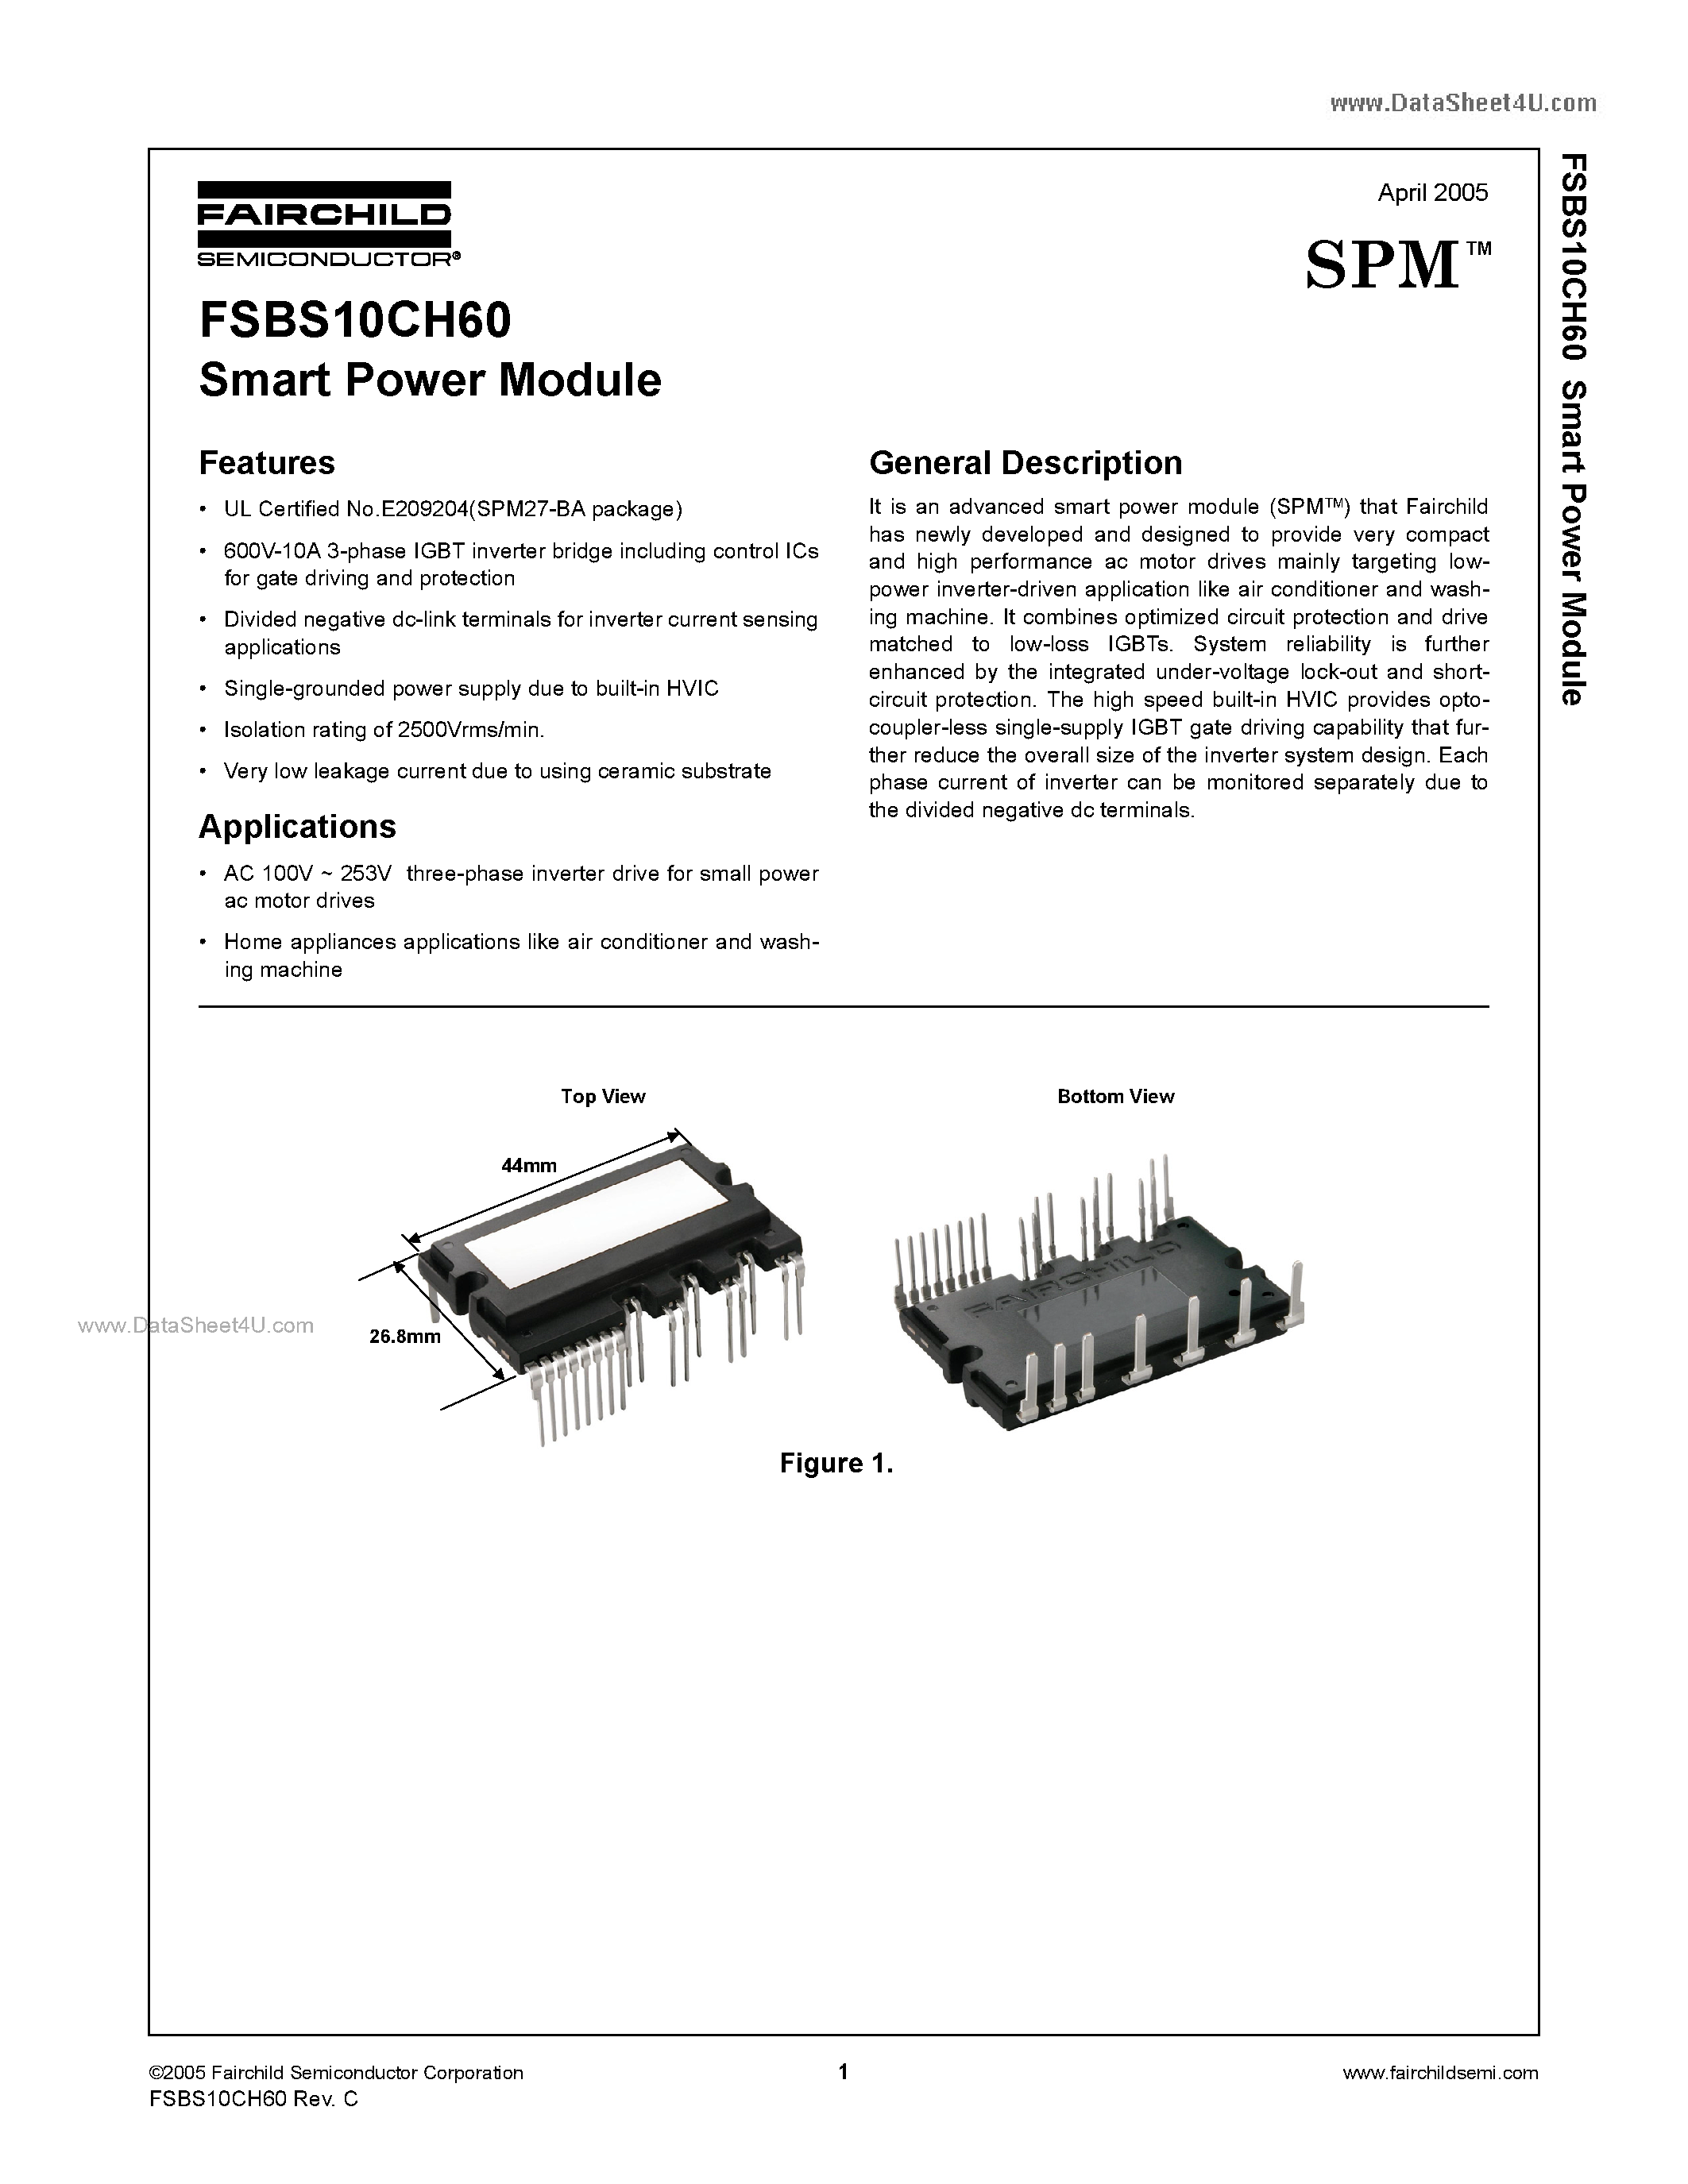 Даташит FSBS10CH60 - Smart Power Module страница 1